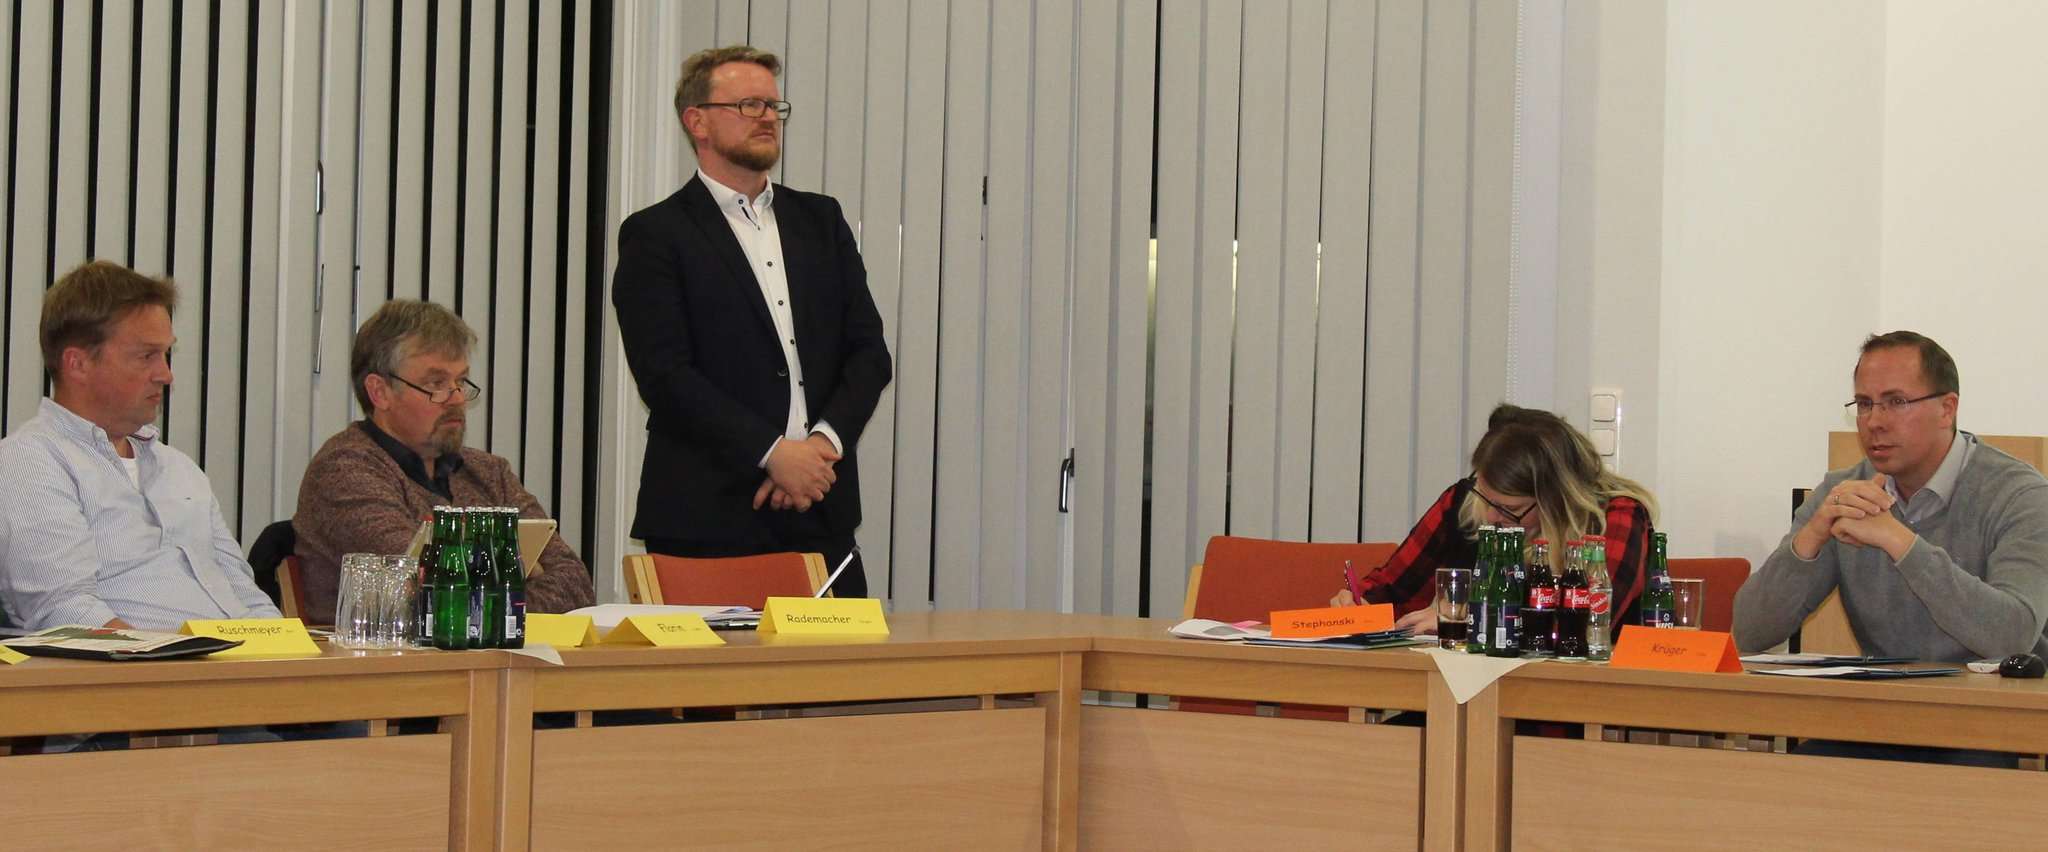 Carsten Fischer (Mitte) von der VBD Beratungsgesellschaft hat den Schulausschussmitgliedern die vier Varianten für die Erweiterung der Grundschule vorgestellt. Foto: Ann-Christin Beims